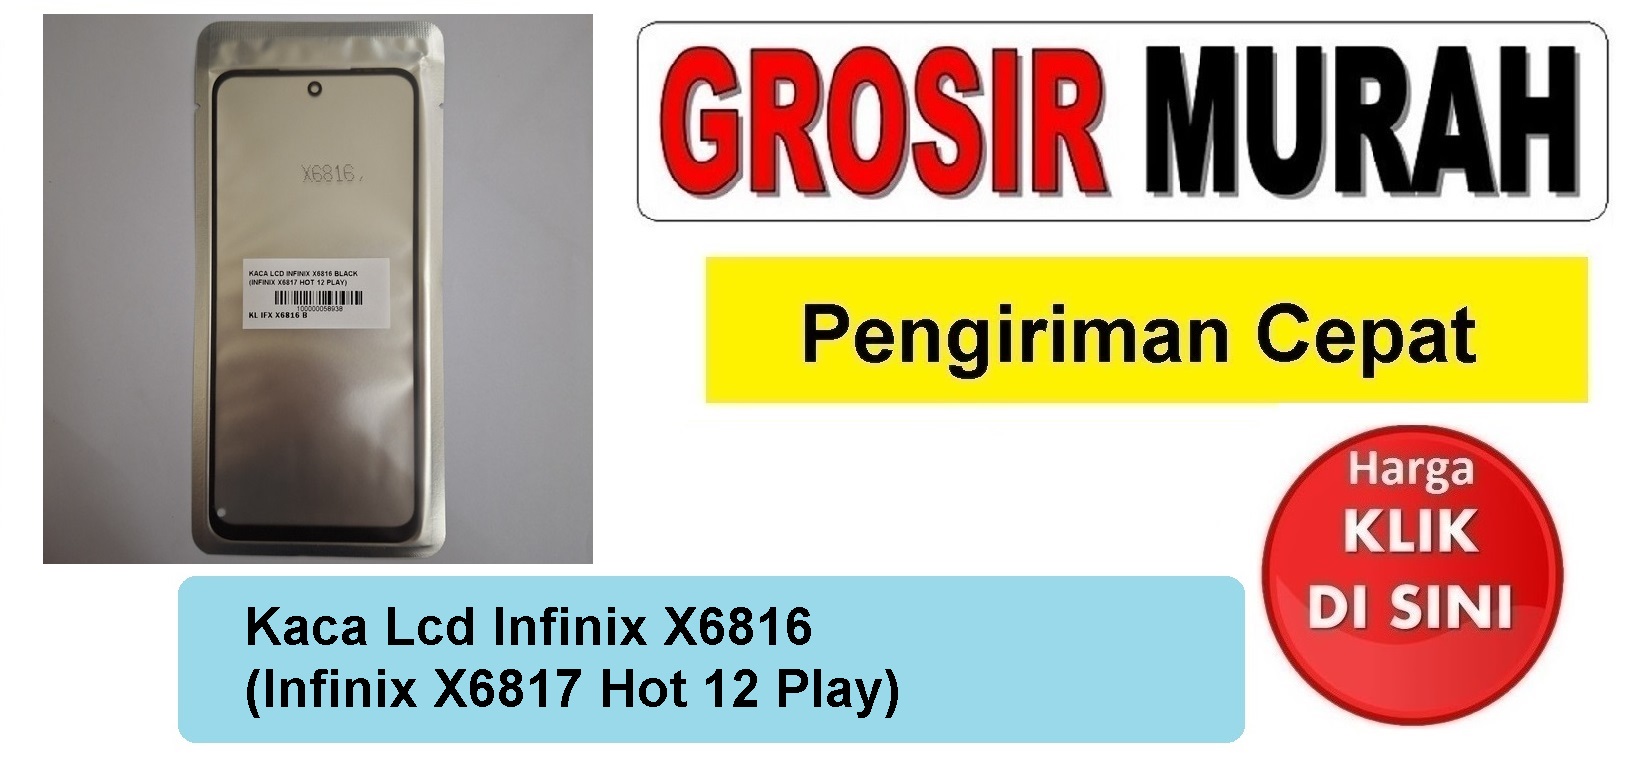 Pusat Penjualan Kaca Lcd Infinix X6816 (Infinix X6817 Hot 12 Play) Glass Oca Kaca Depan Layar Digitizer Panel Spare Part hp Grosir